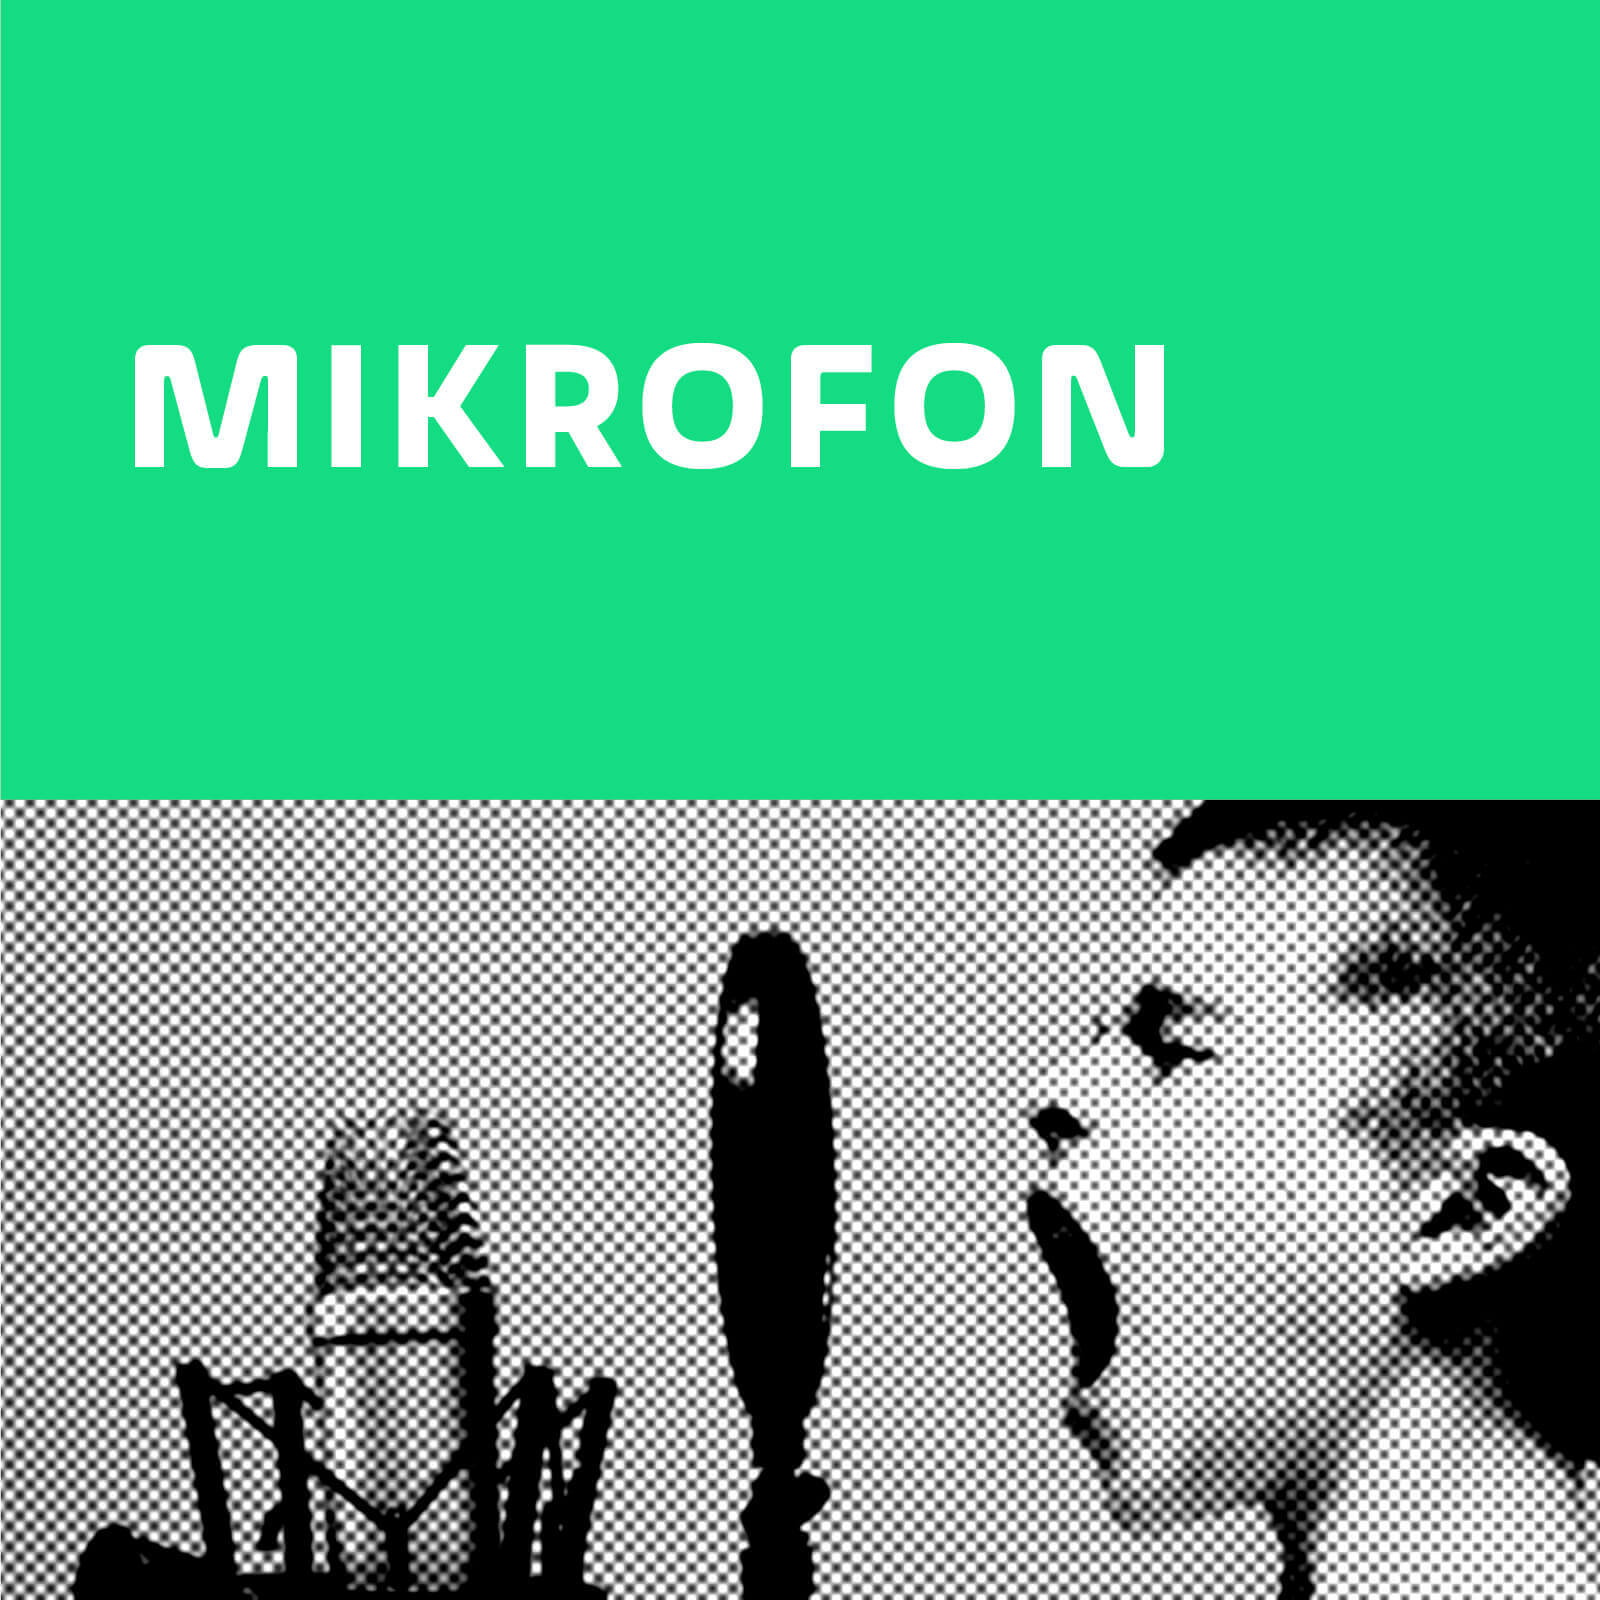 https://www.wetell.de/ueber-uns/news/neuer-tarif-mikrofon/ - Neuer Tarif "Mikrofon"